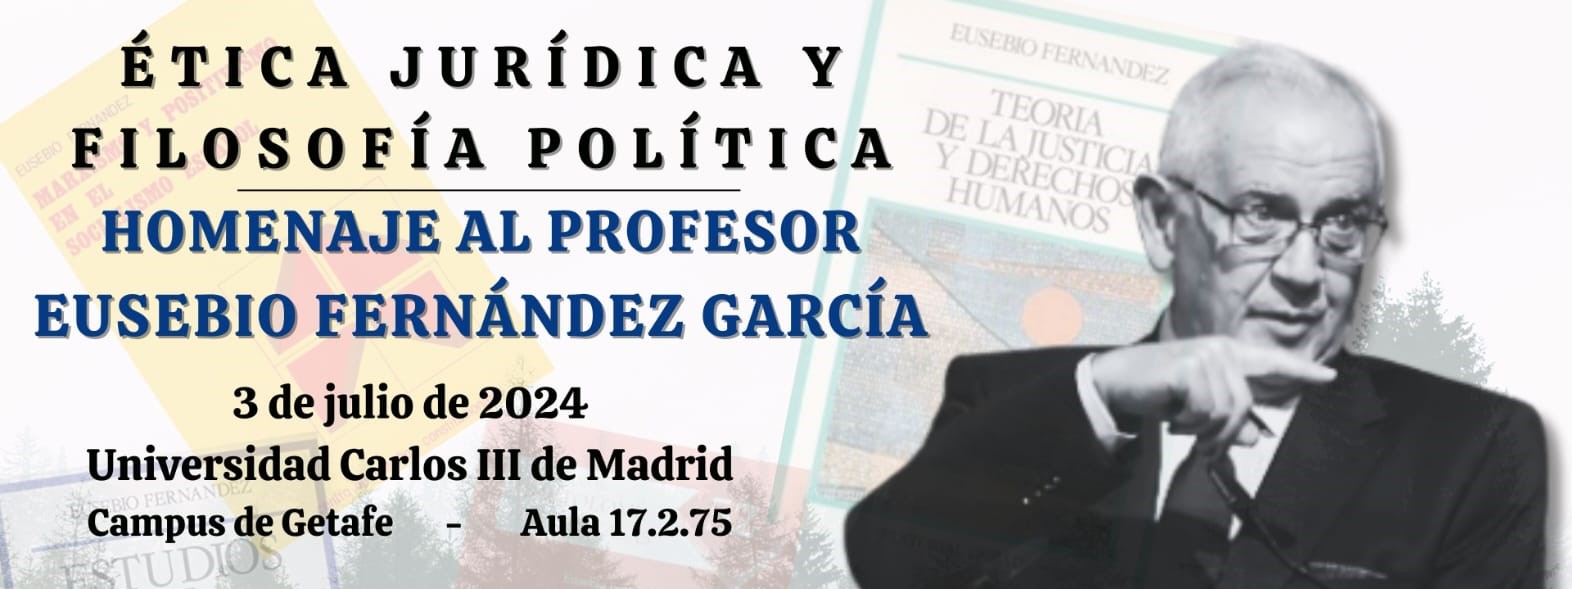 Ética jurídica y filosofía política. Homenaje al profesor Eusebio Fernández García